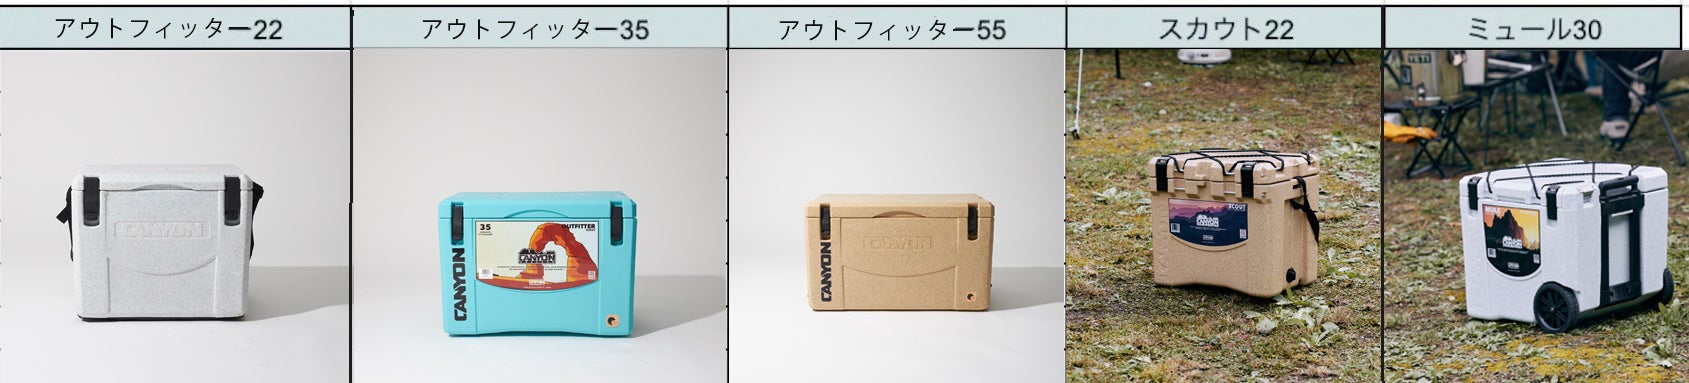 【日本初上陸】3月21日発売、過酷な環境下でも耐え抜く米国生まれのハードクーラーボックス「キャニオンクーラーズ」のサブ画像9